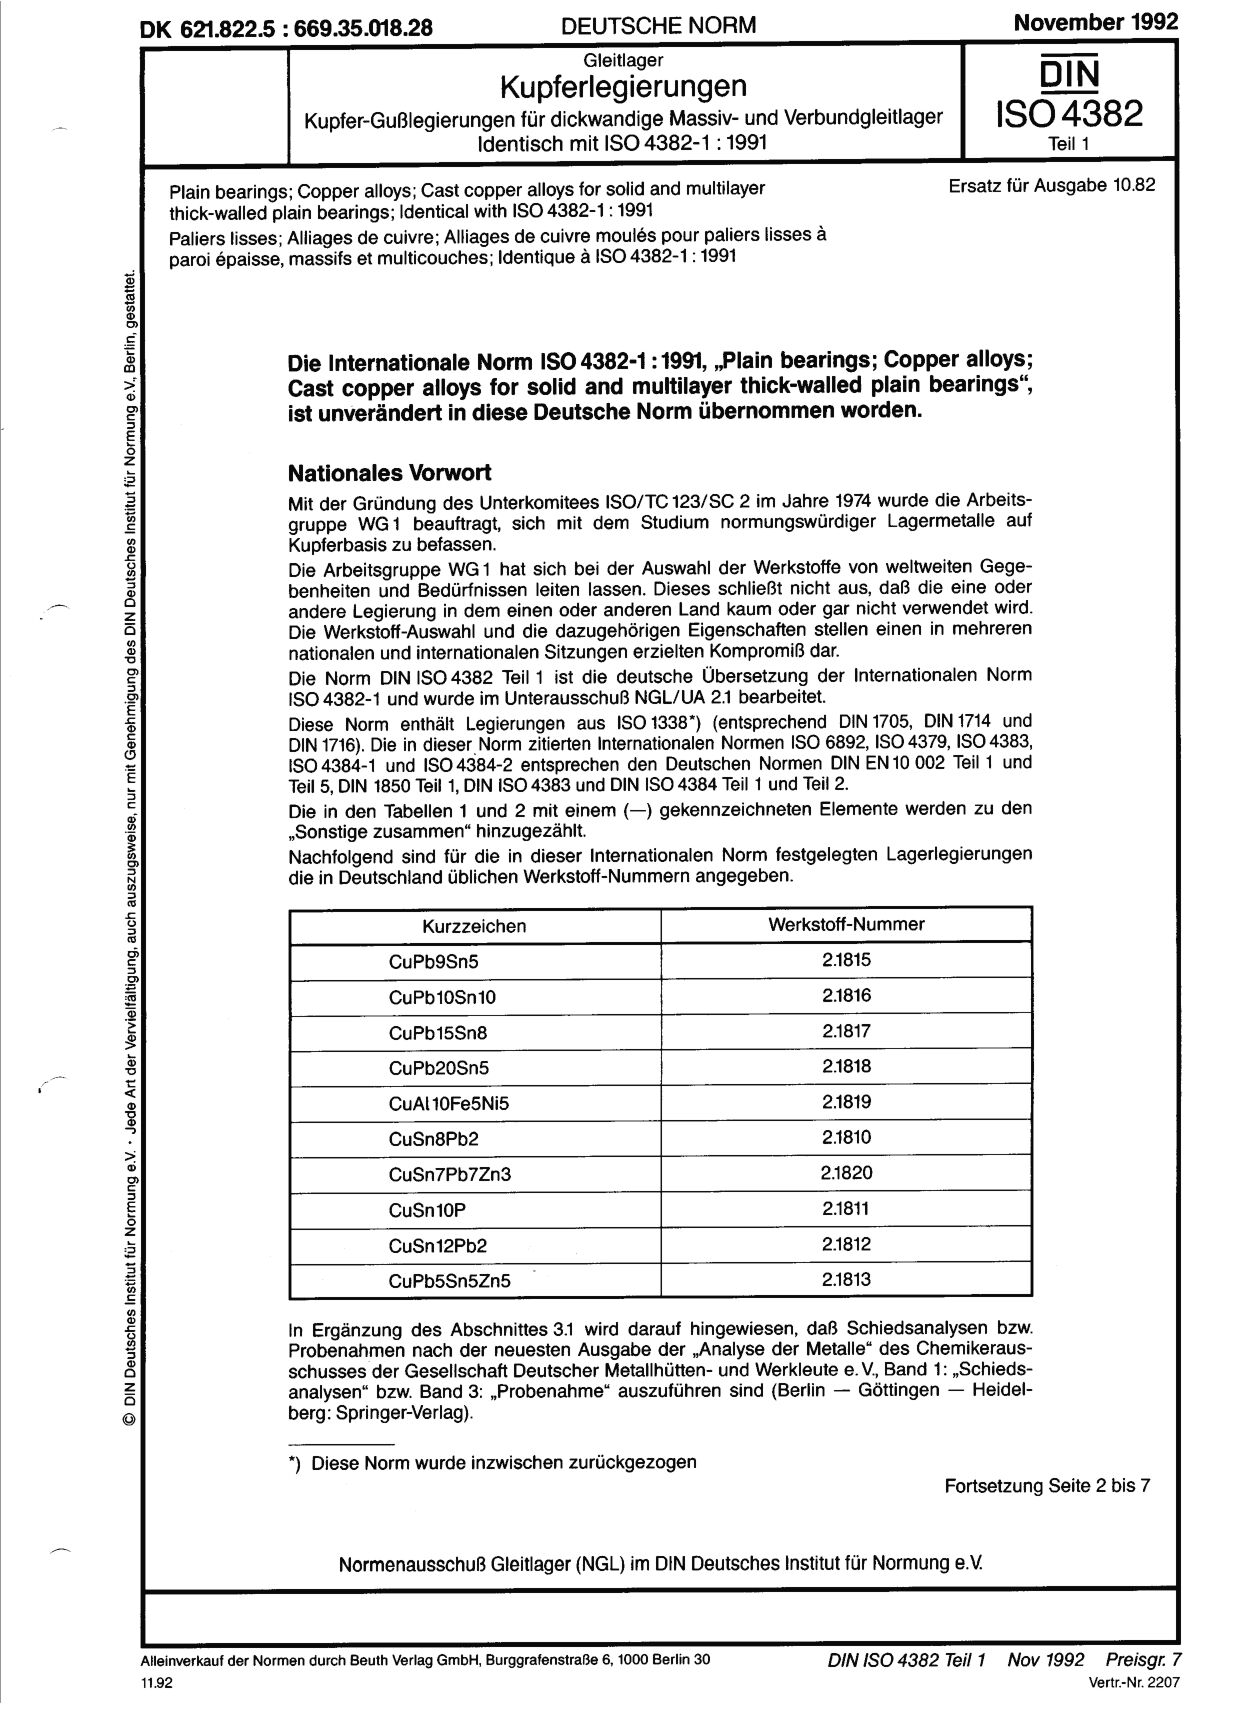 DIN ISO 4382-1:1992封面图